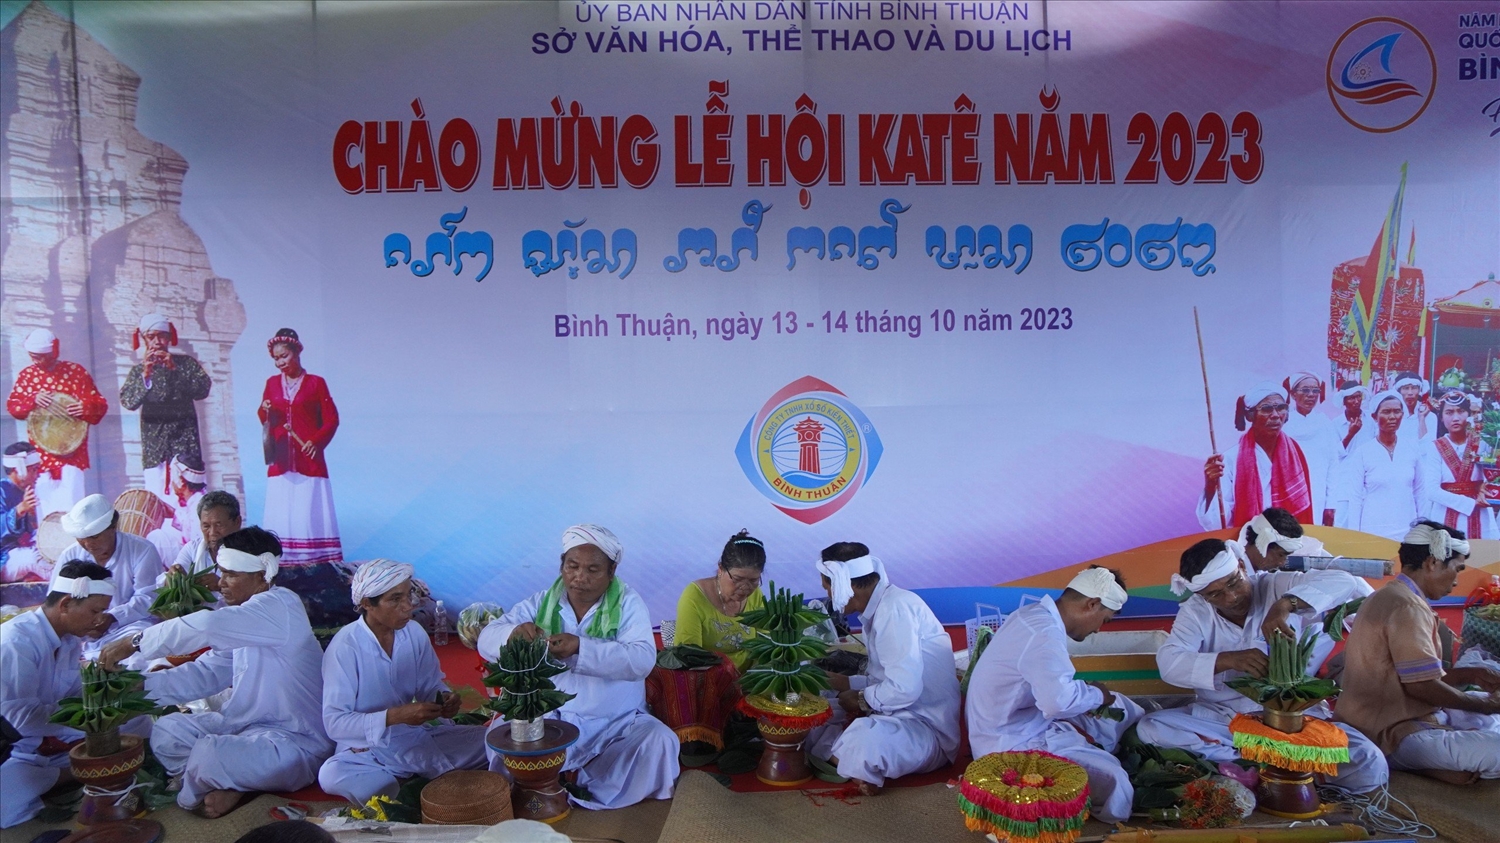 Thi trưng bày và trang trí lễ vật trên Thôn la giữa các địa phương trong tỉnh Bình Thuận